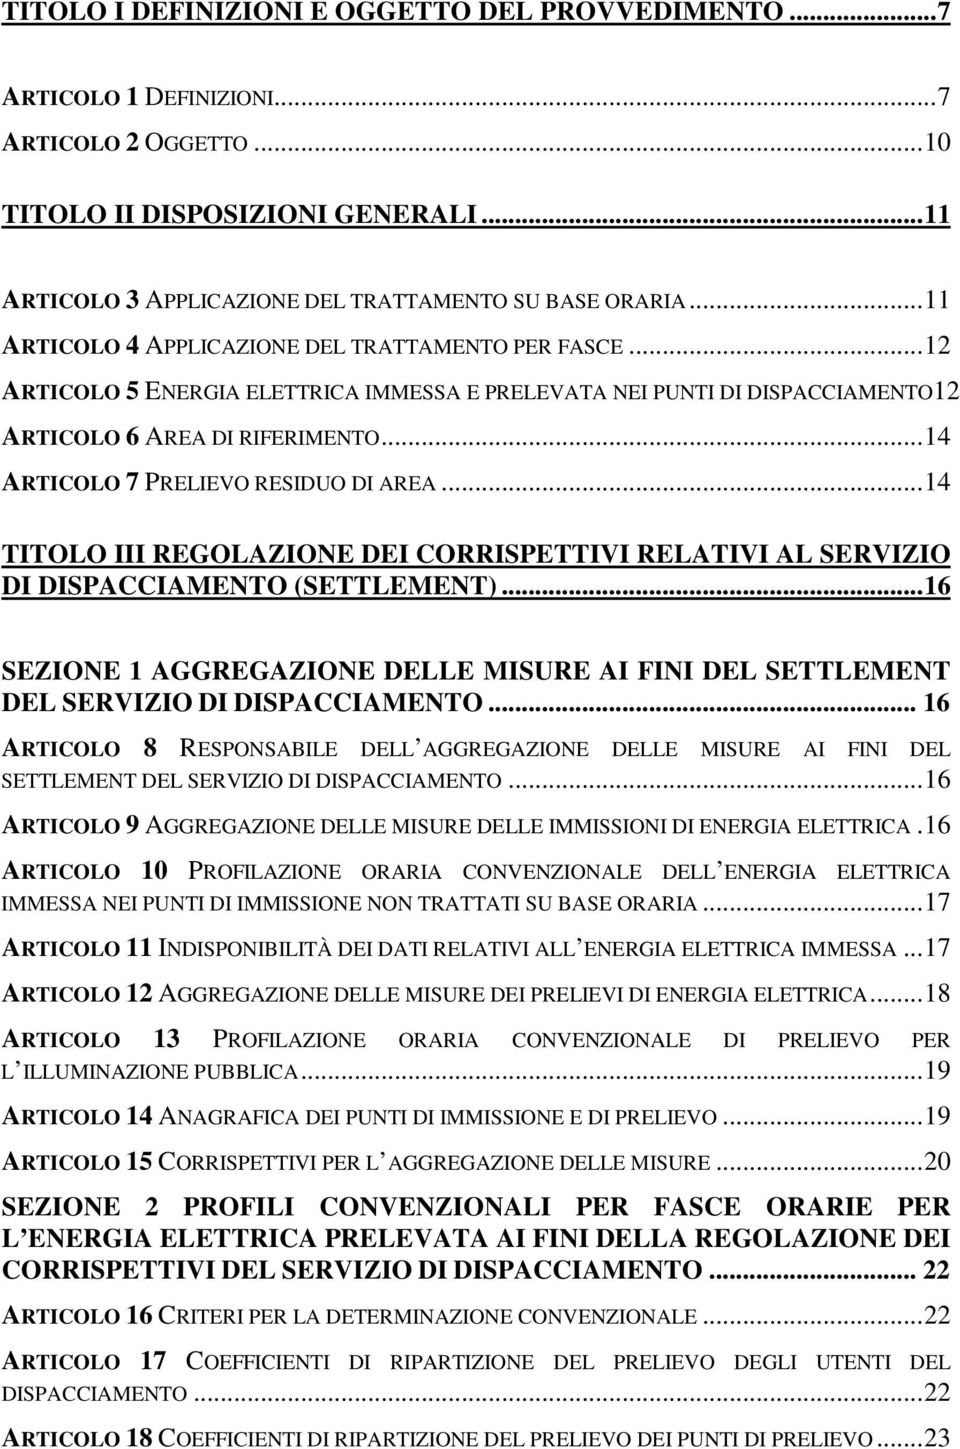 .. 14 ARTICOLO 7 PRELIEVO RESIDUO DI AREA... 14 TITOLO III REGOLAZIONE DEI CORRISPETTIVI RELATIVI AL SERVIZIO DI DISPACCIAMENTO (SETTLEMENT).